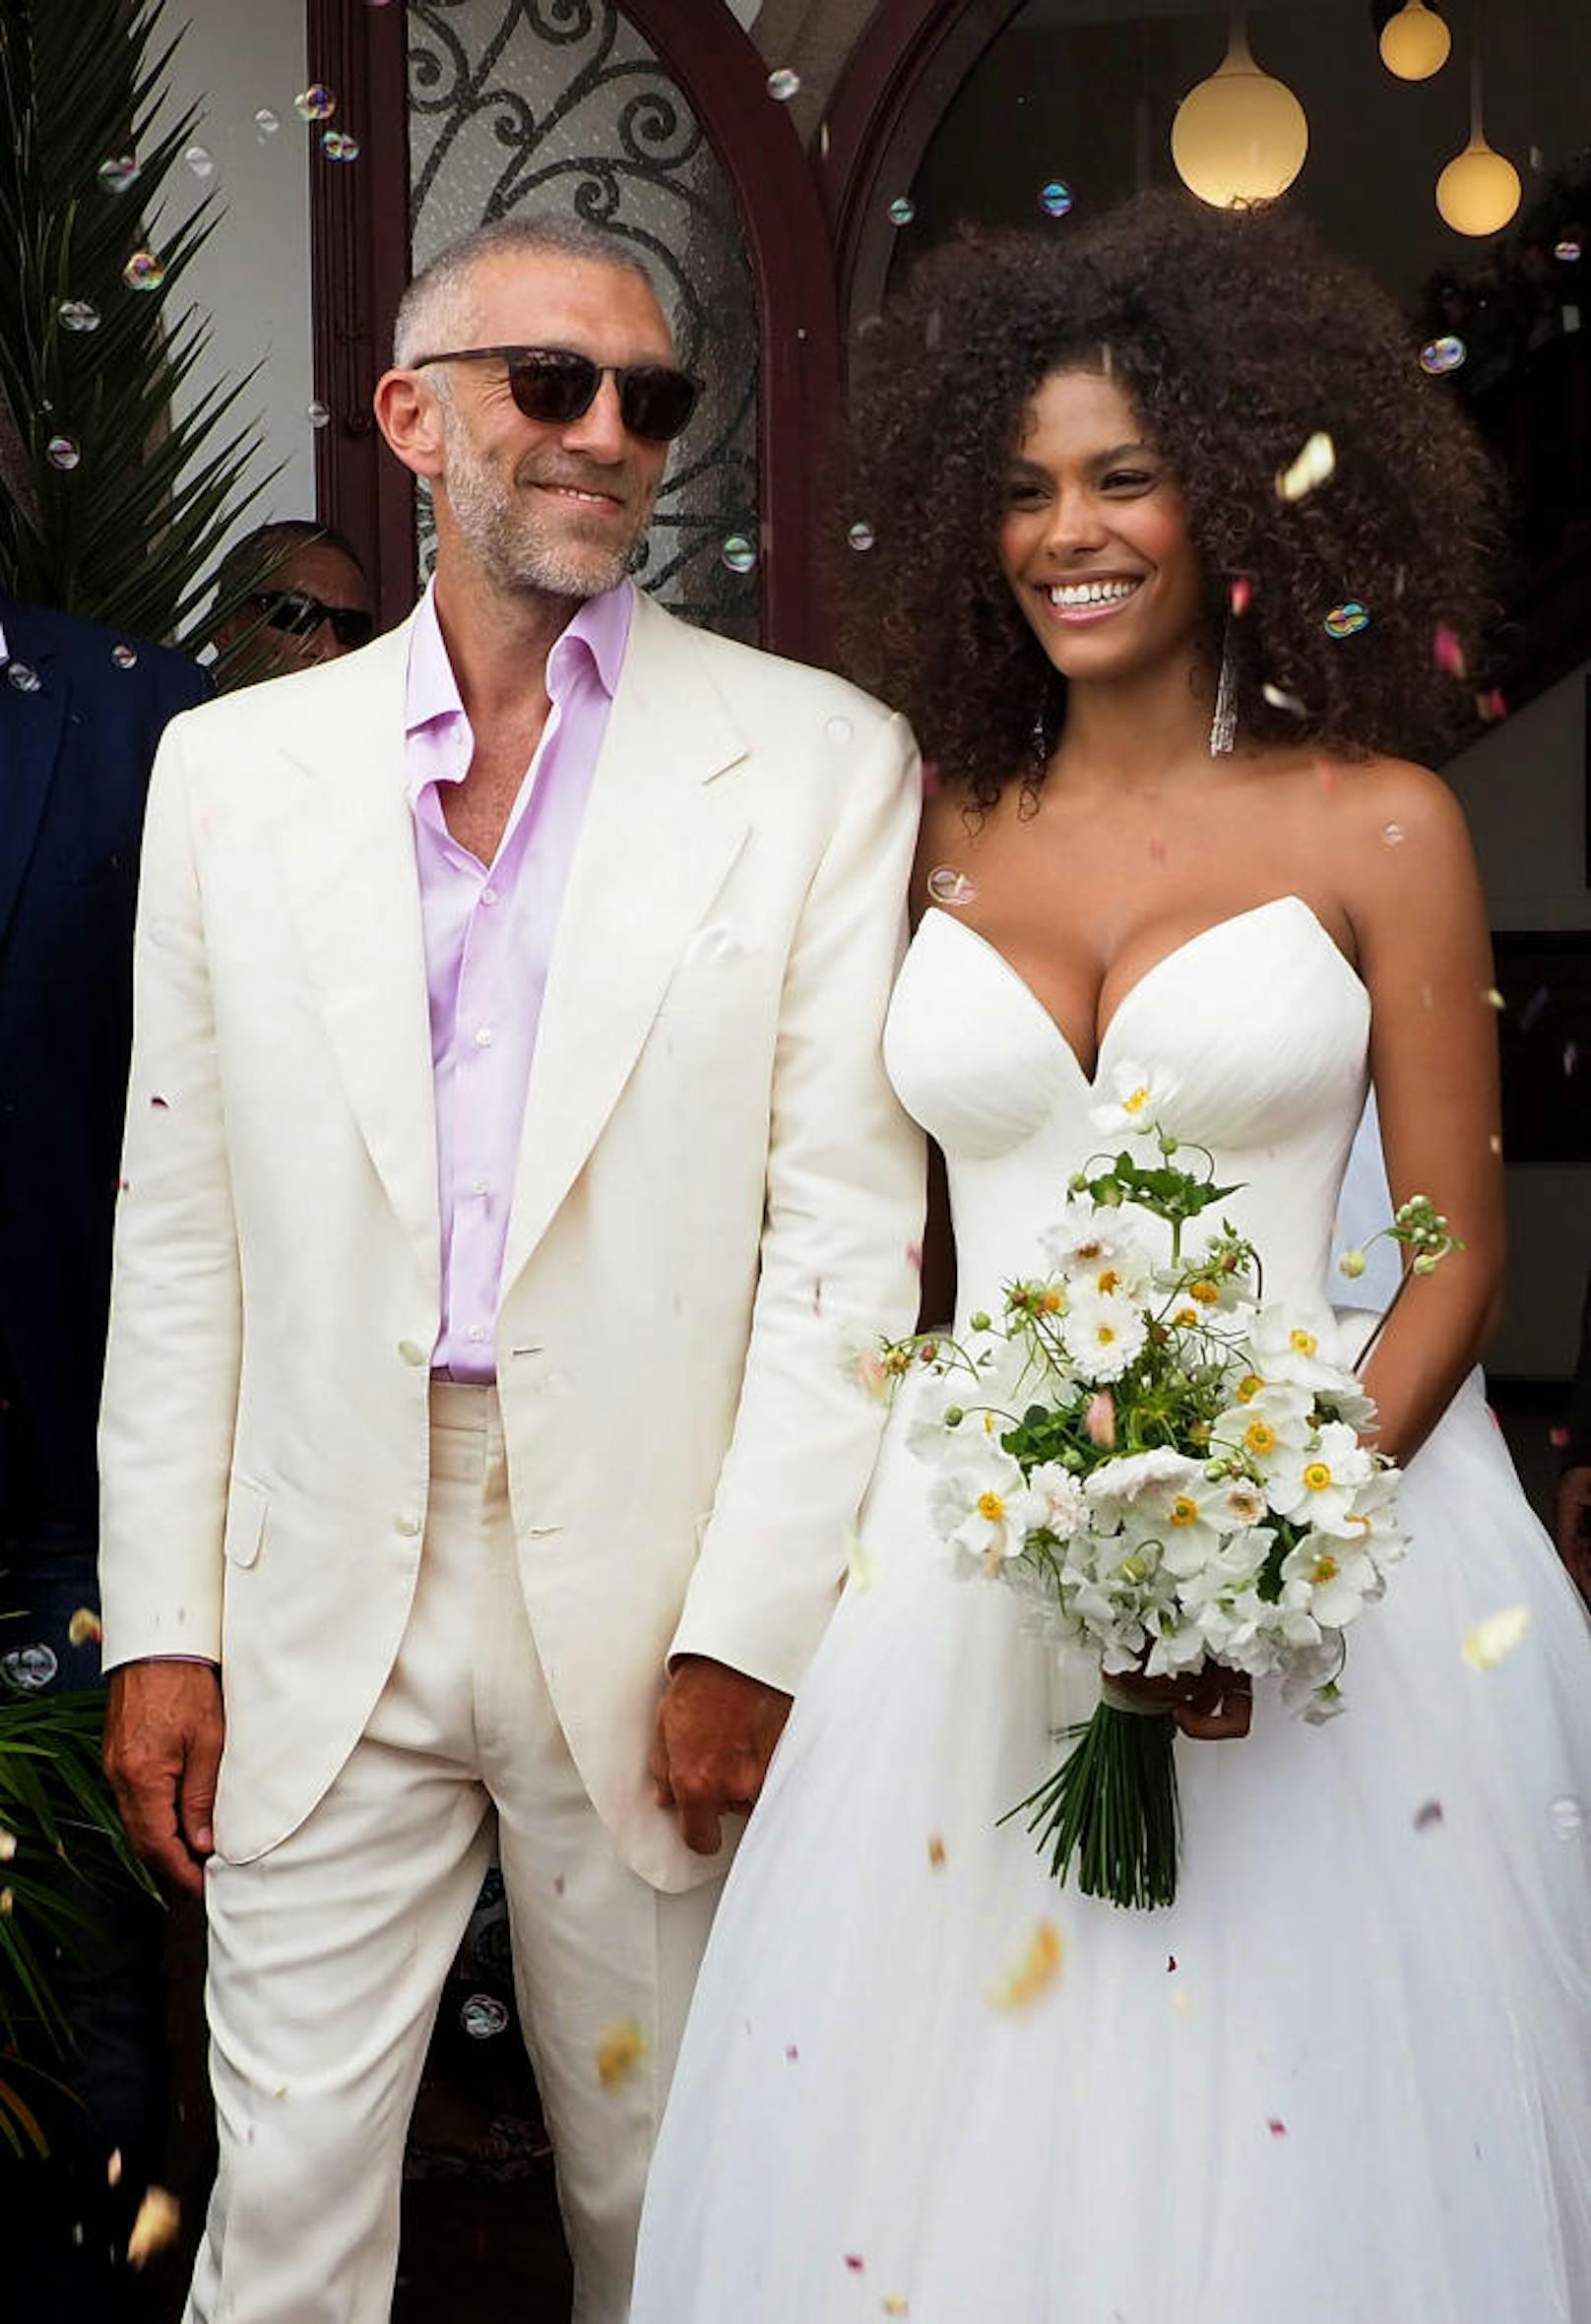 32 Jahre jünger und überglücklich: Vincent Cassel ("Oceans 12") heiratete am 24. August Model Tina Kunakey. Die beiden feierten in Bidart in Frankreich